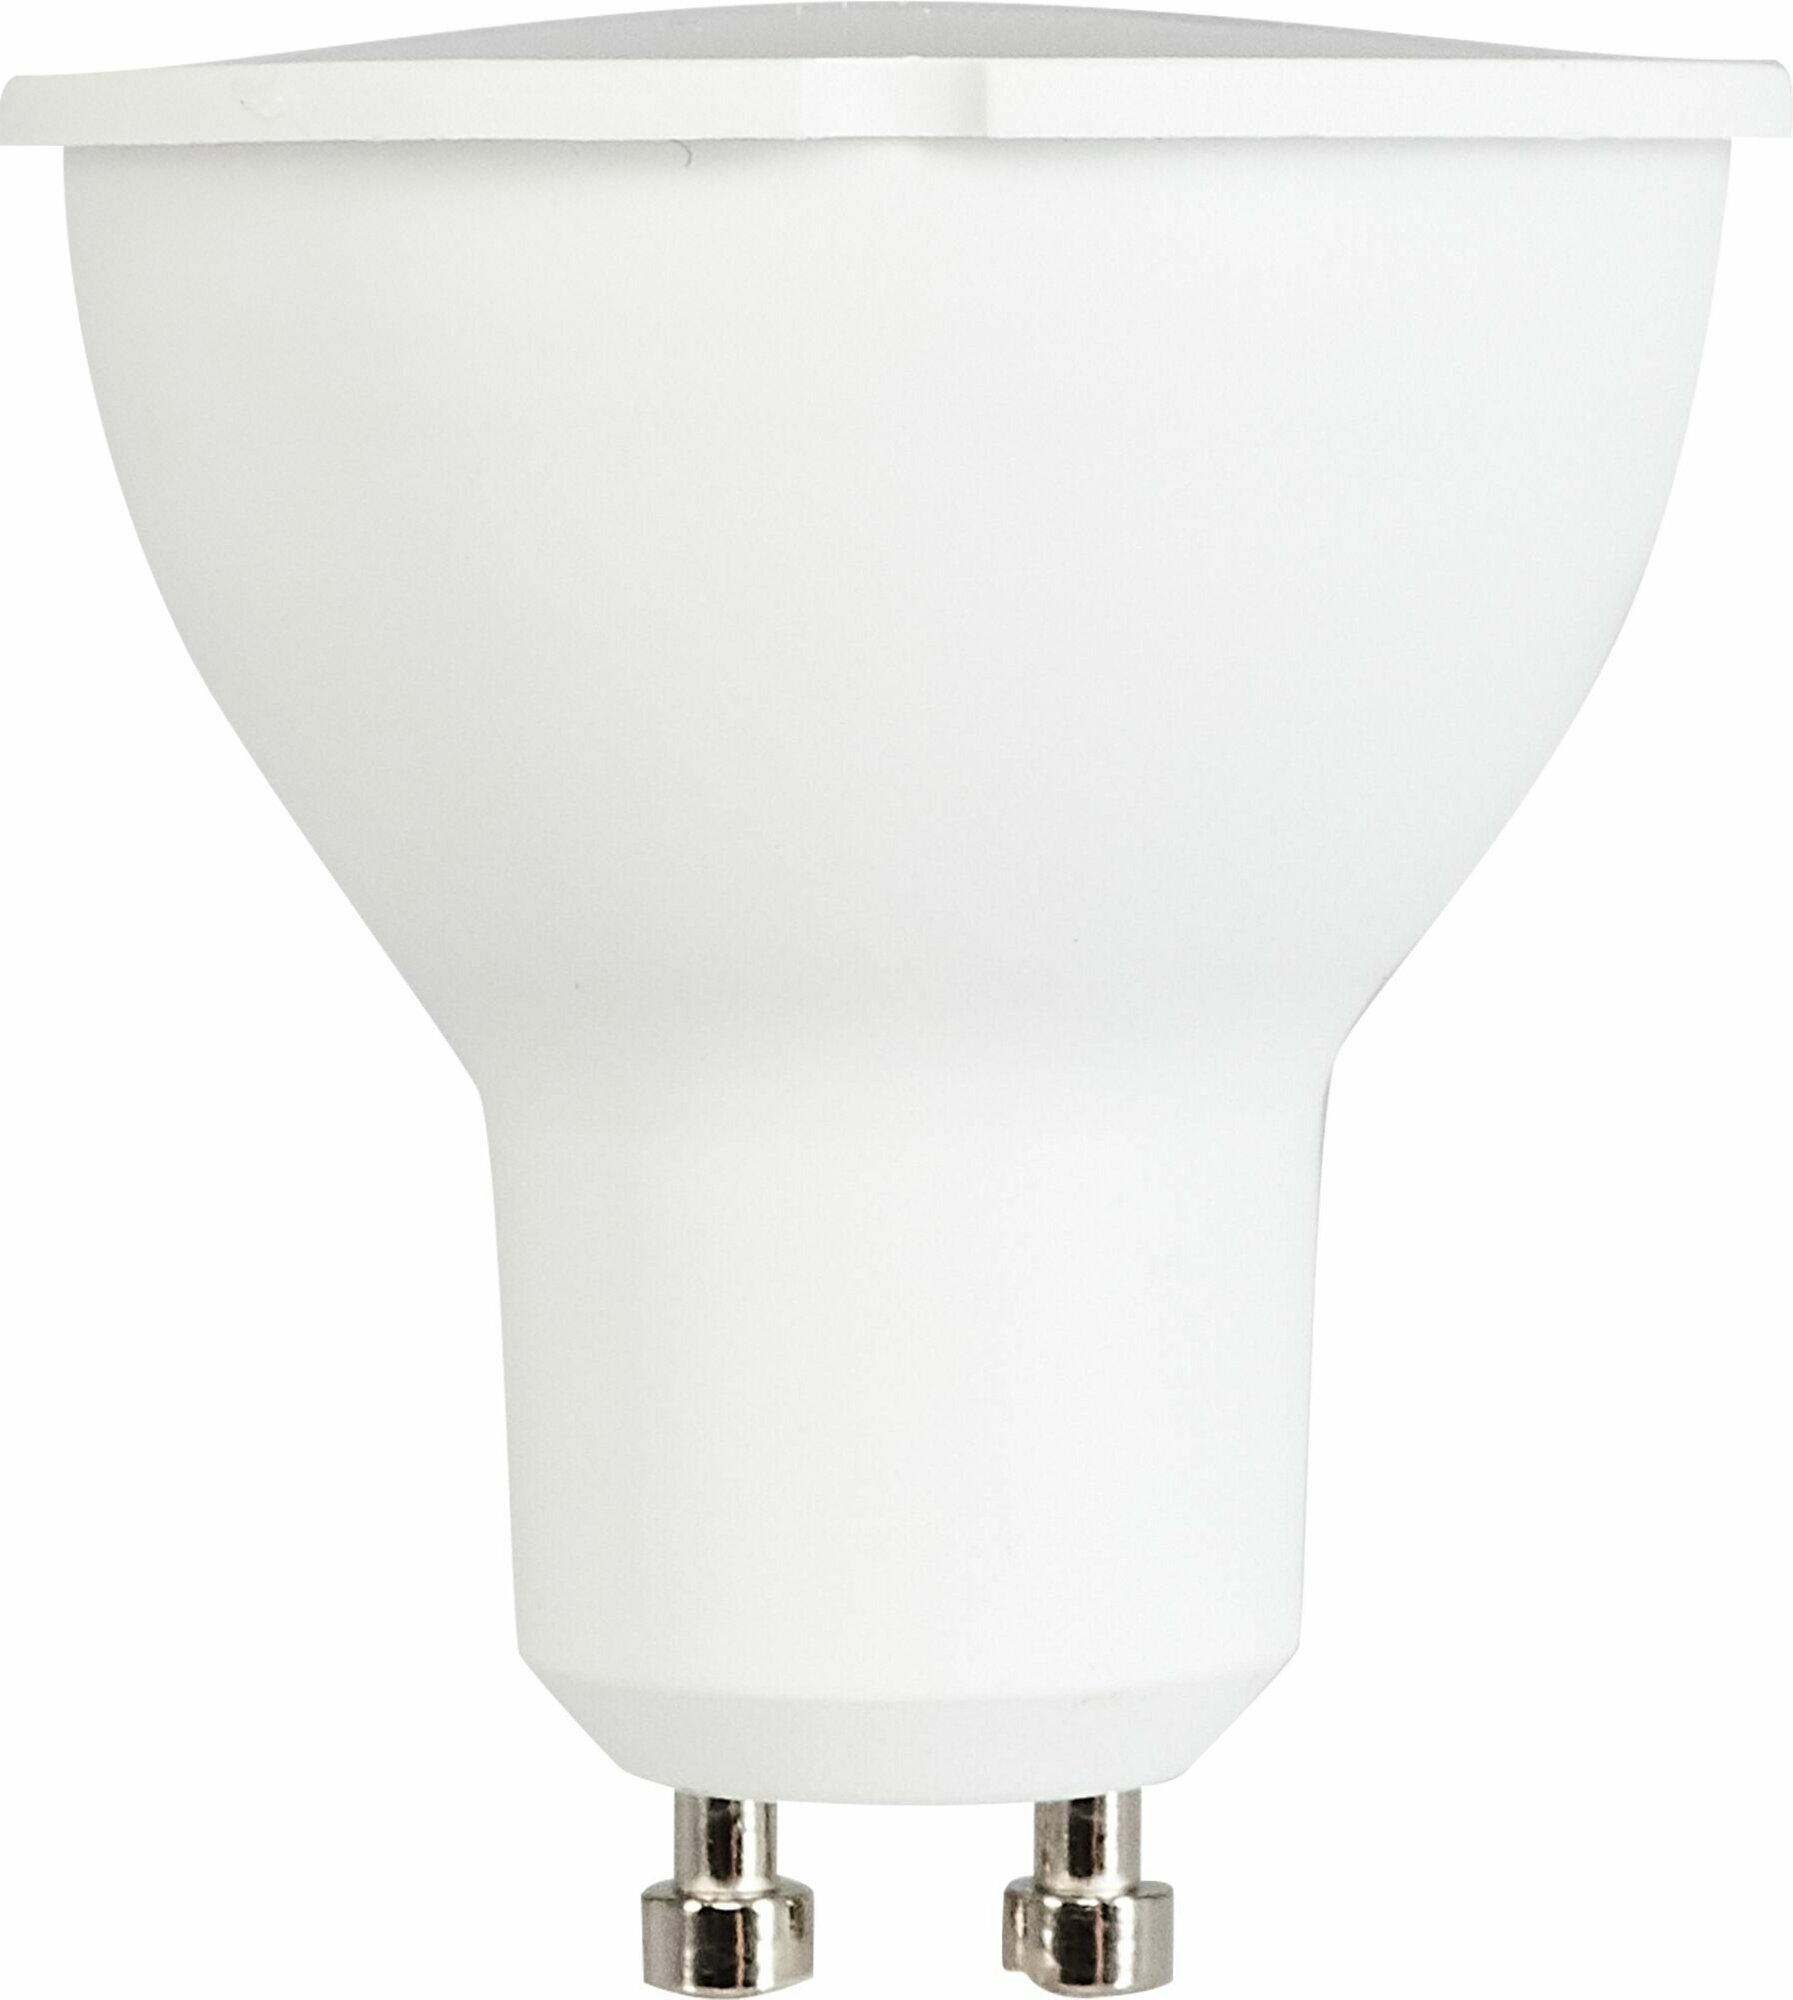 Лампа светодиодная Volpe Norma GU10 220 В 7 Вт спот 600 лм тёплый белый свет